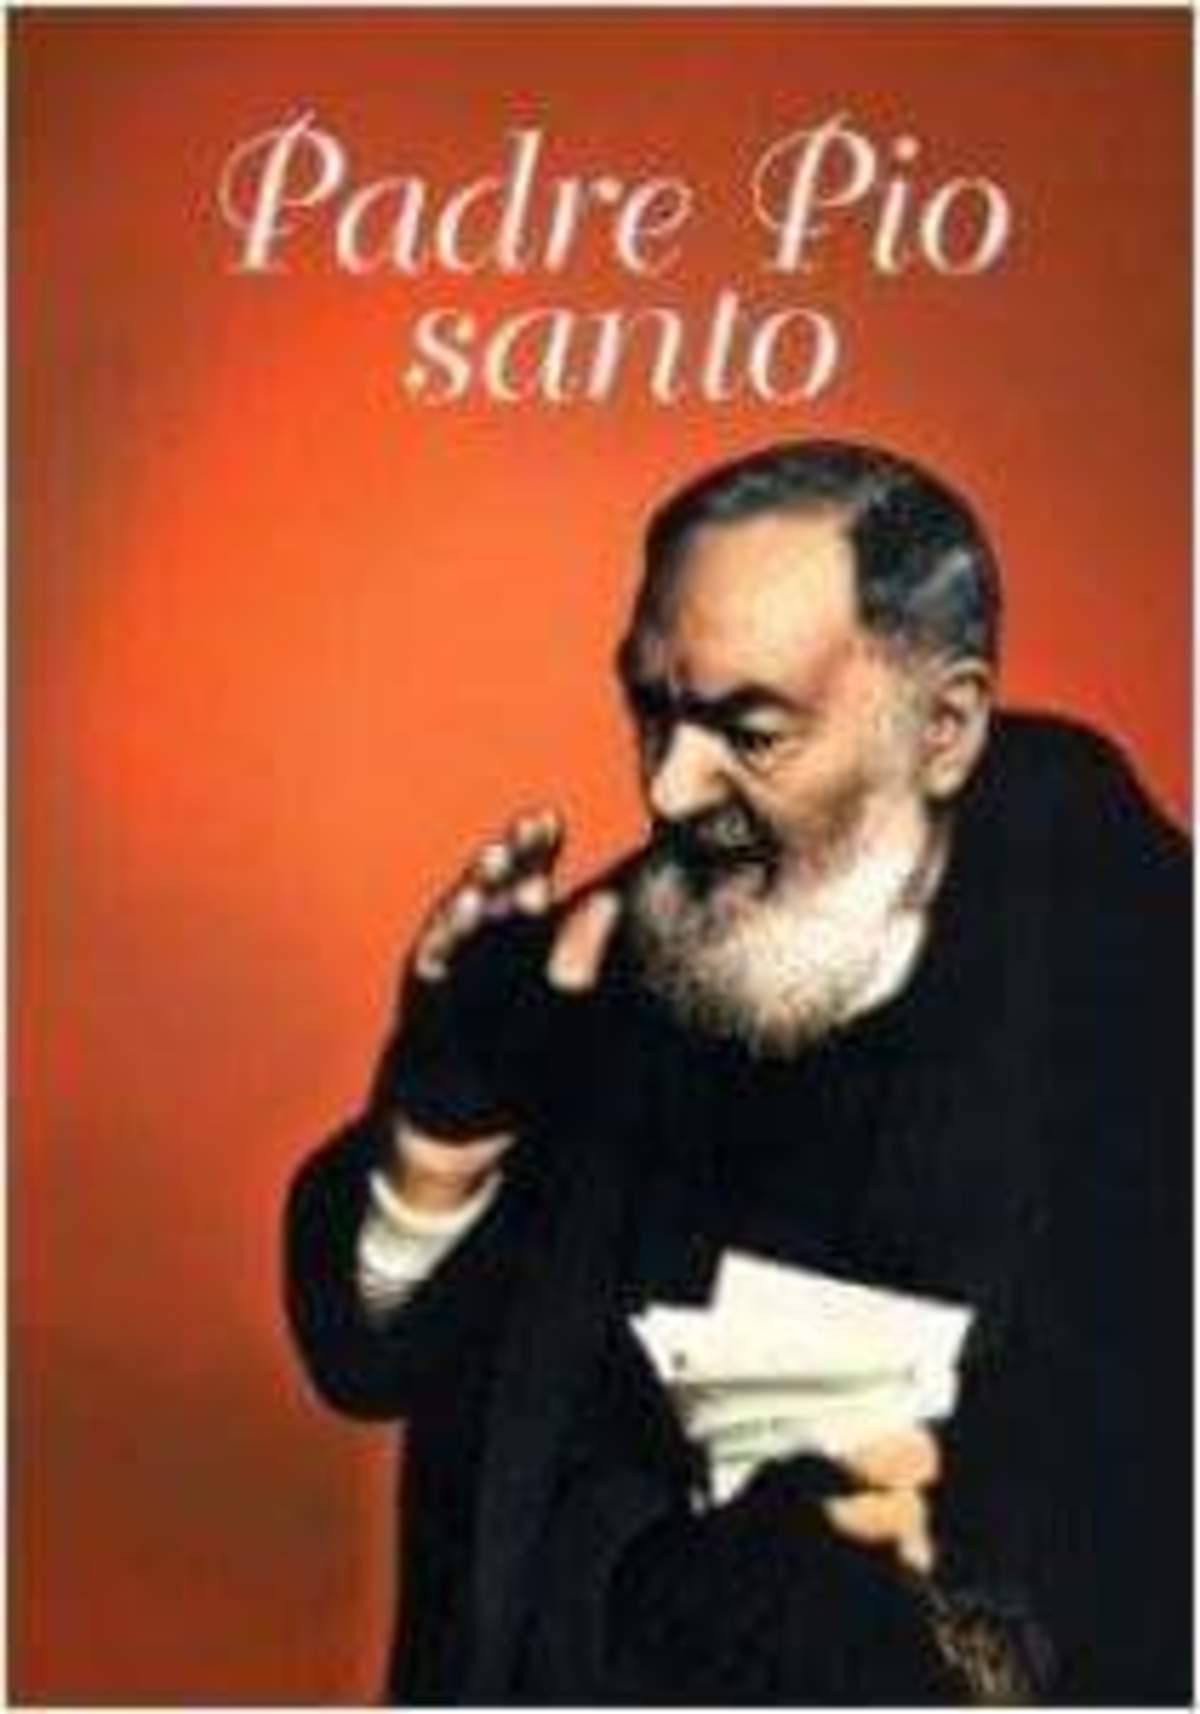 Le più belle immagini di Padre Pio 292